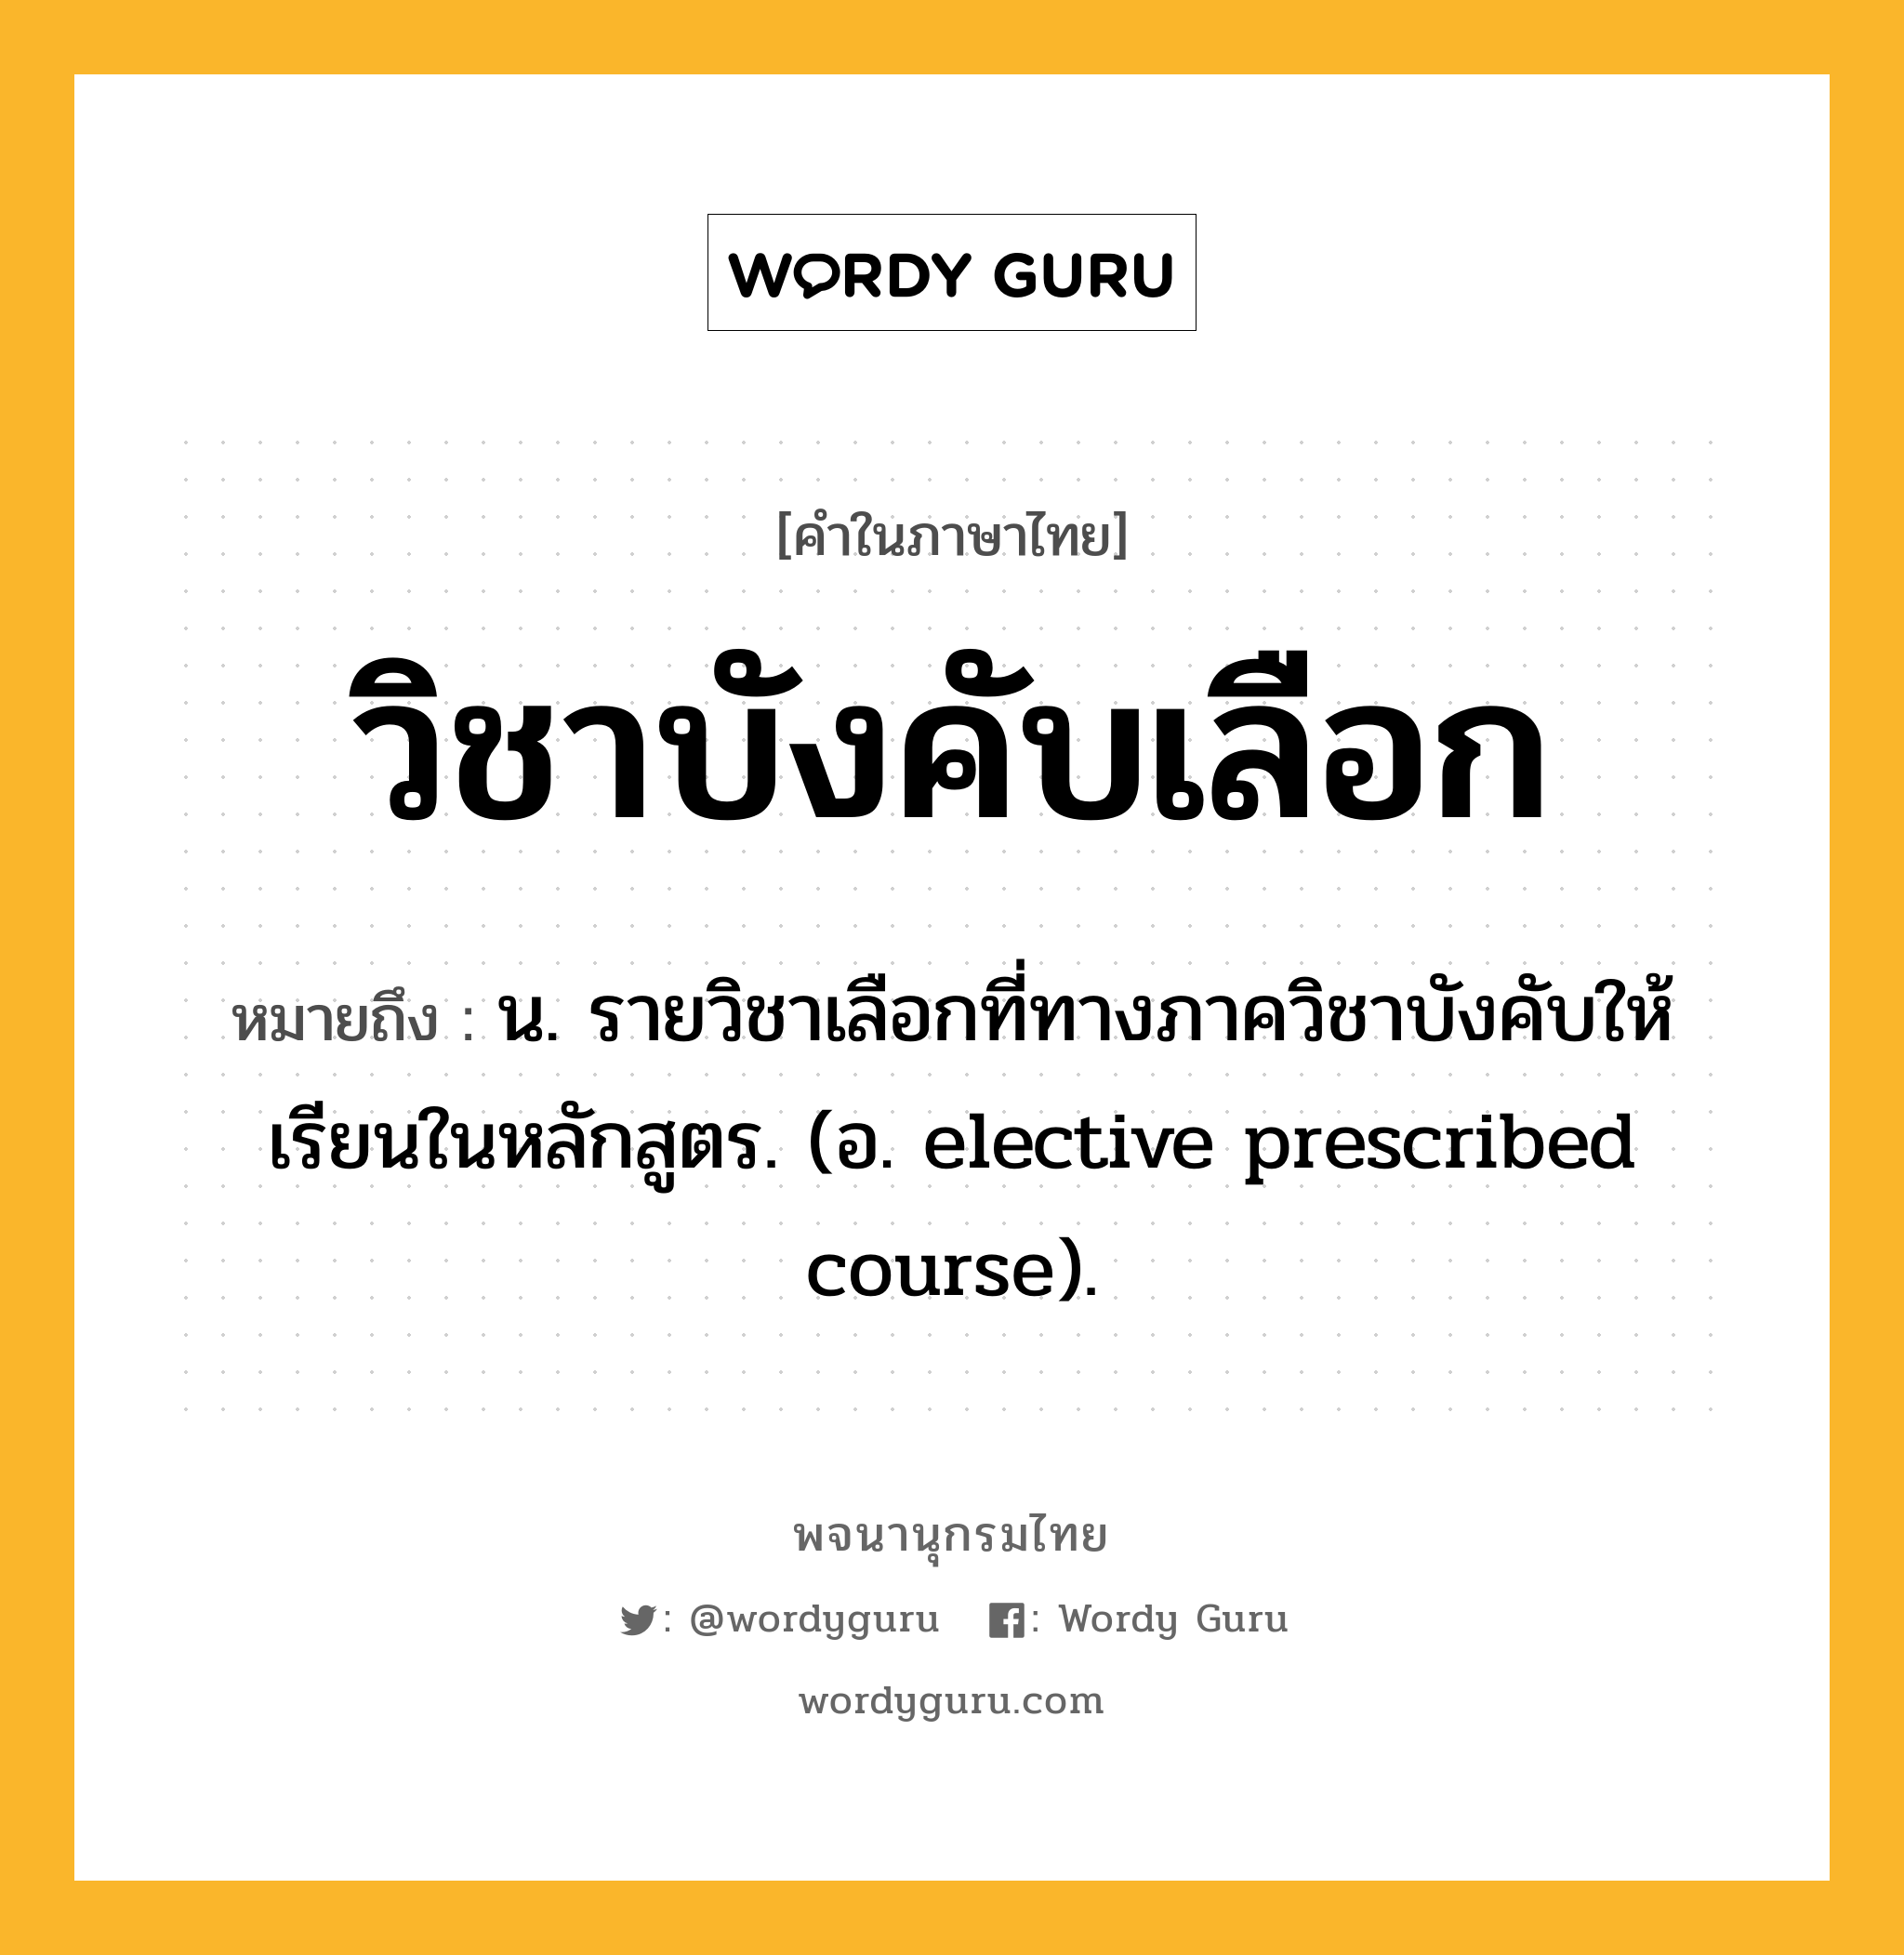 วิชาบังคับเลือก หมายถึงอะไร?, คำในภาษาไทย วิชาบังคับเลือก หมายถึง น. รายวิชาเลือกที่ทางภาควิชาบังคับให้เรียนในหลักสูตร. (อ. elective prescribed course).